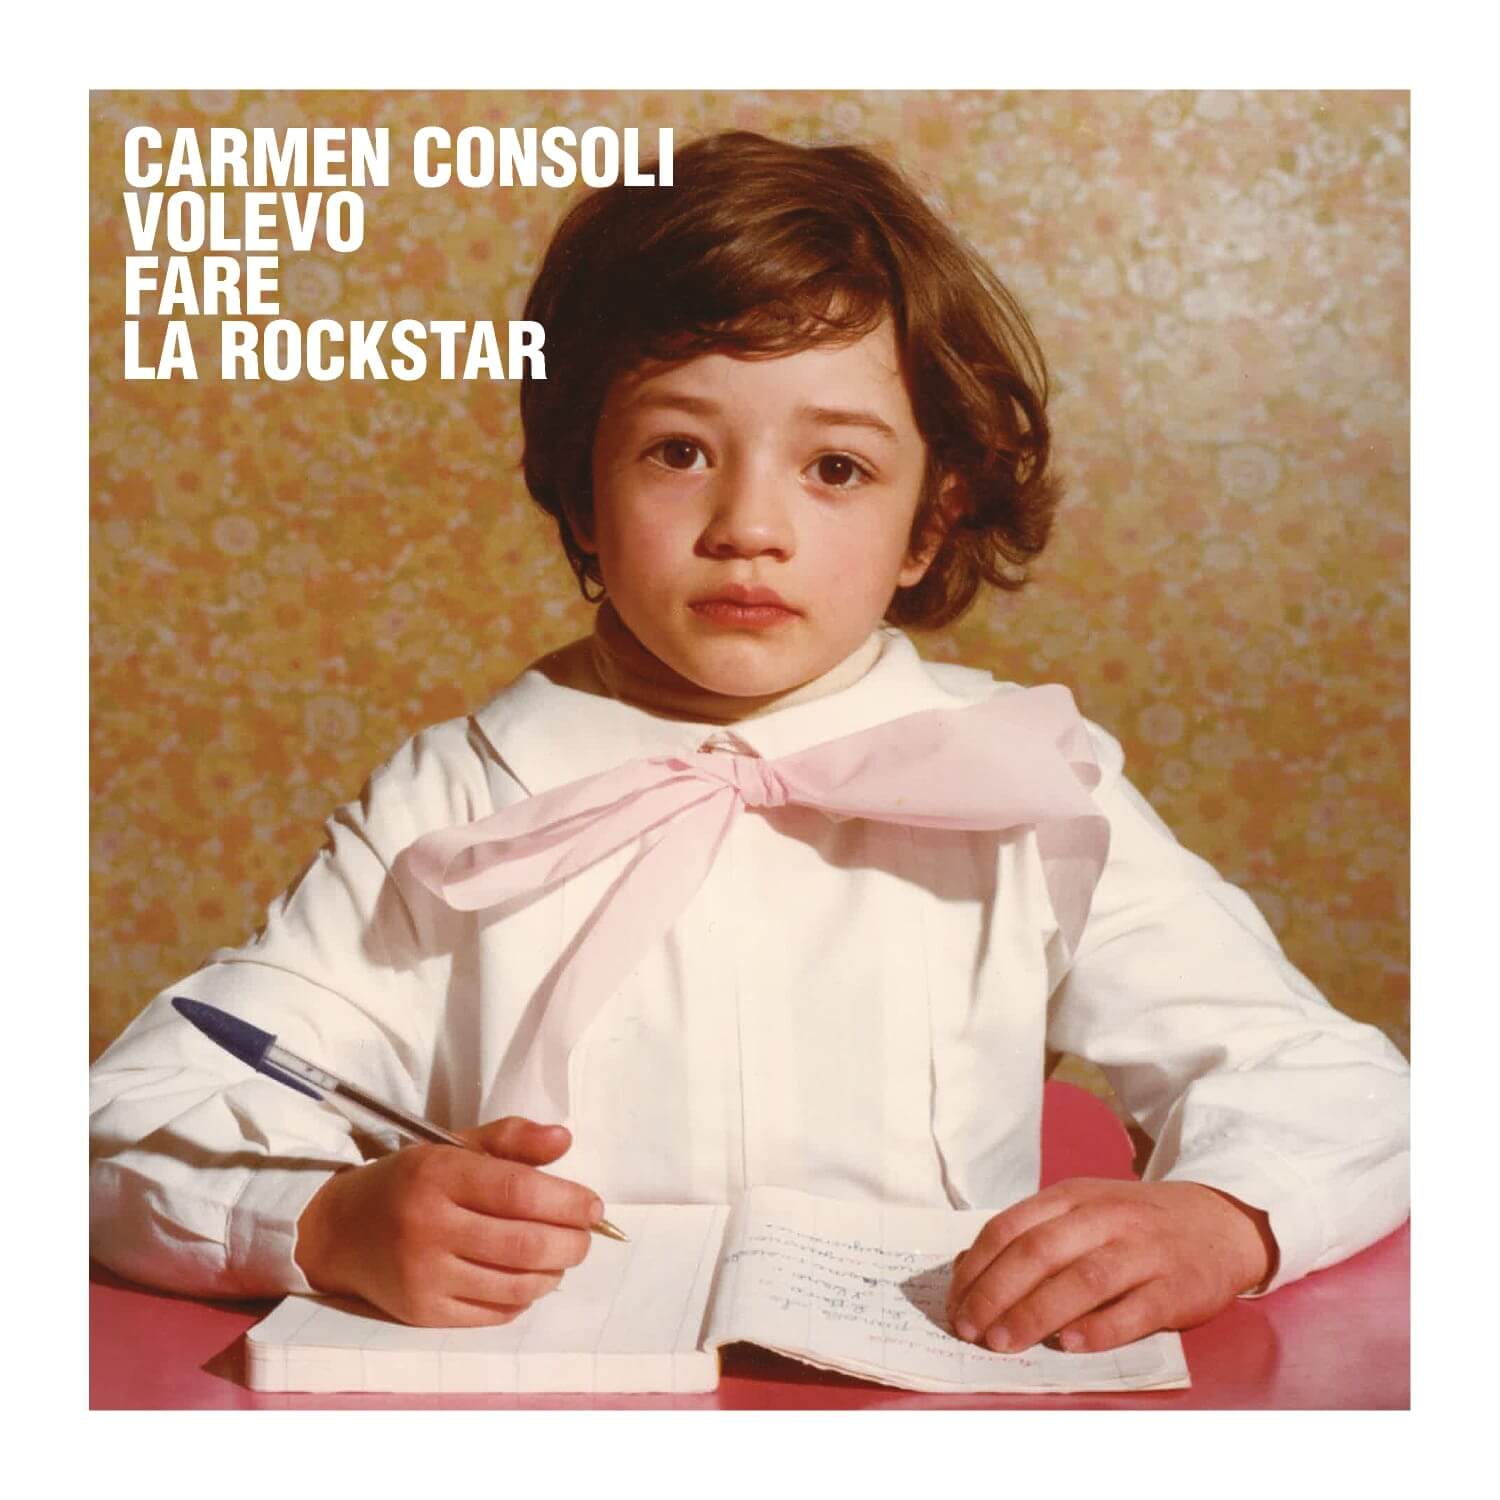 Carmen Consoli, volevo essere una rockstar, album cover